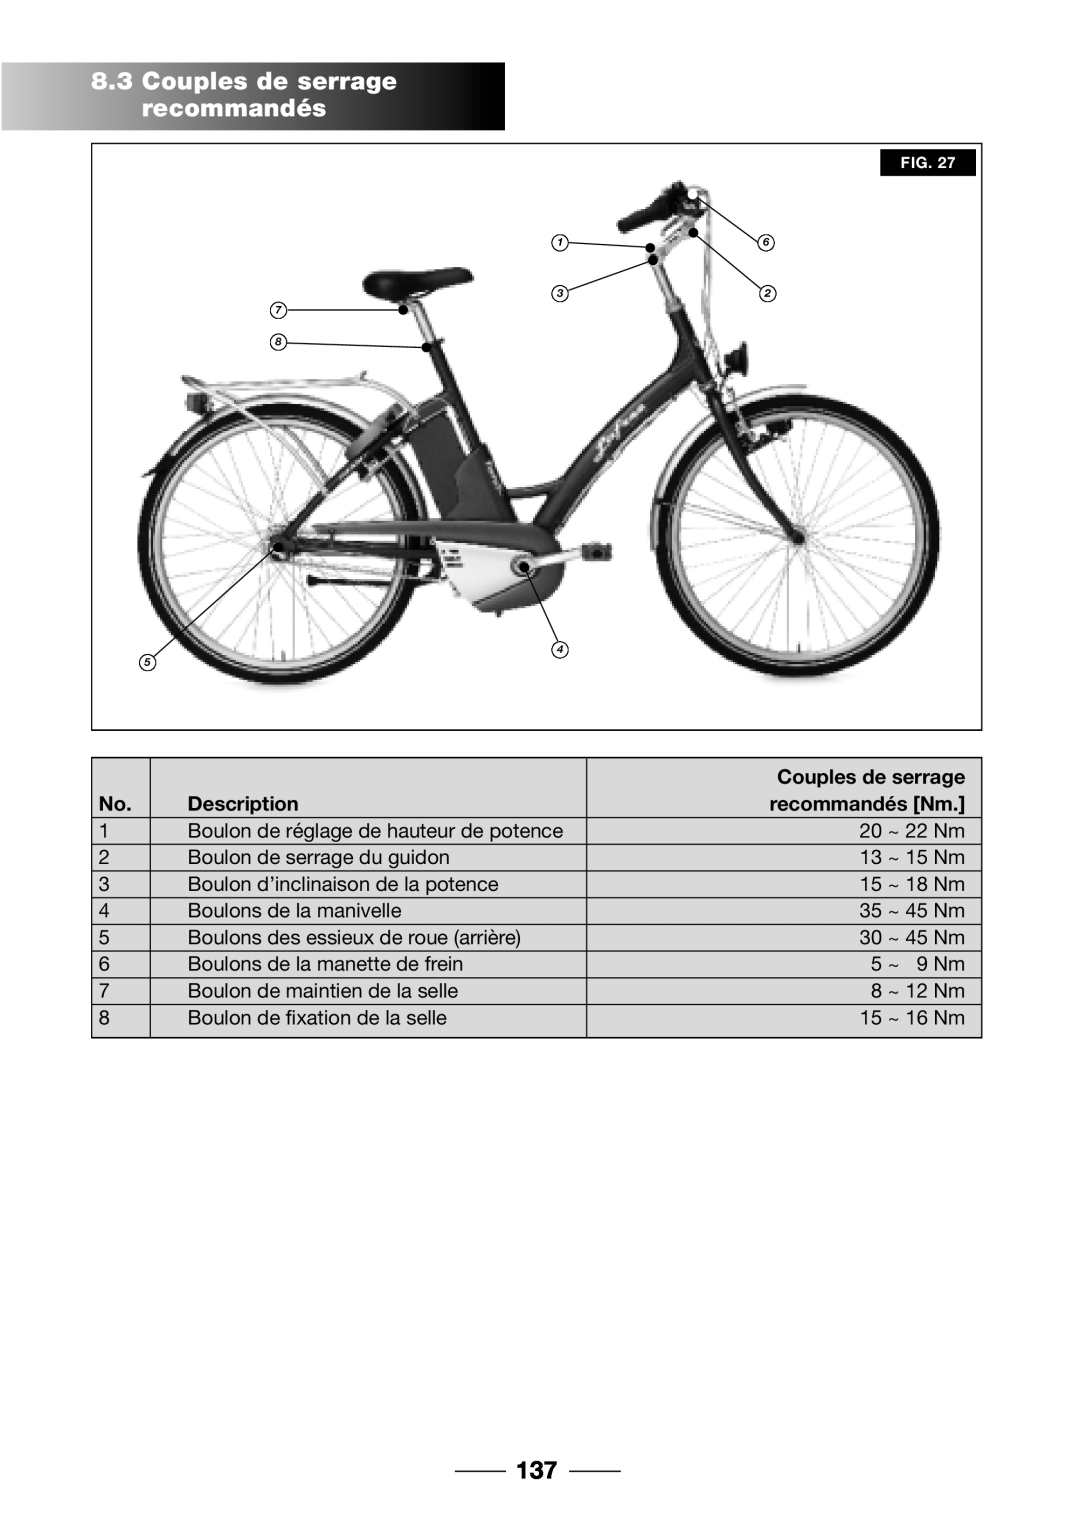 Giant 2002 Motorized Bicycle owner manual Couples de serrage recommandés, recommandés Nm, Description 